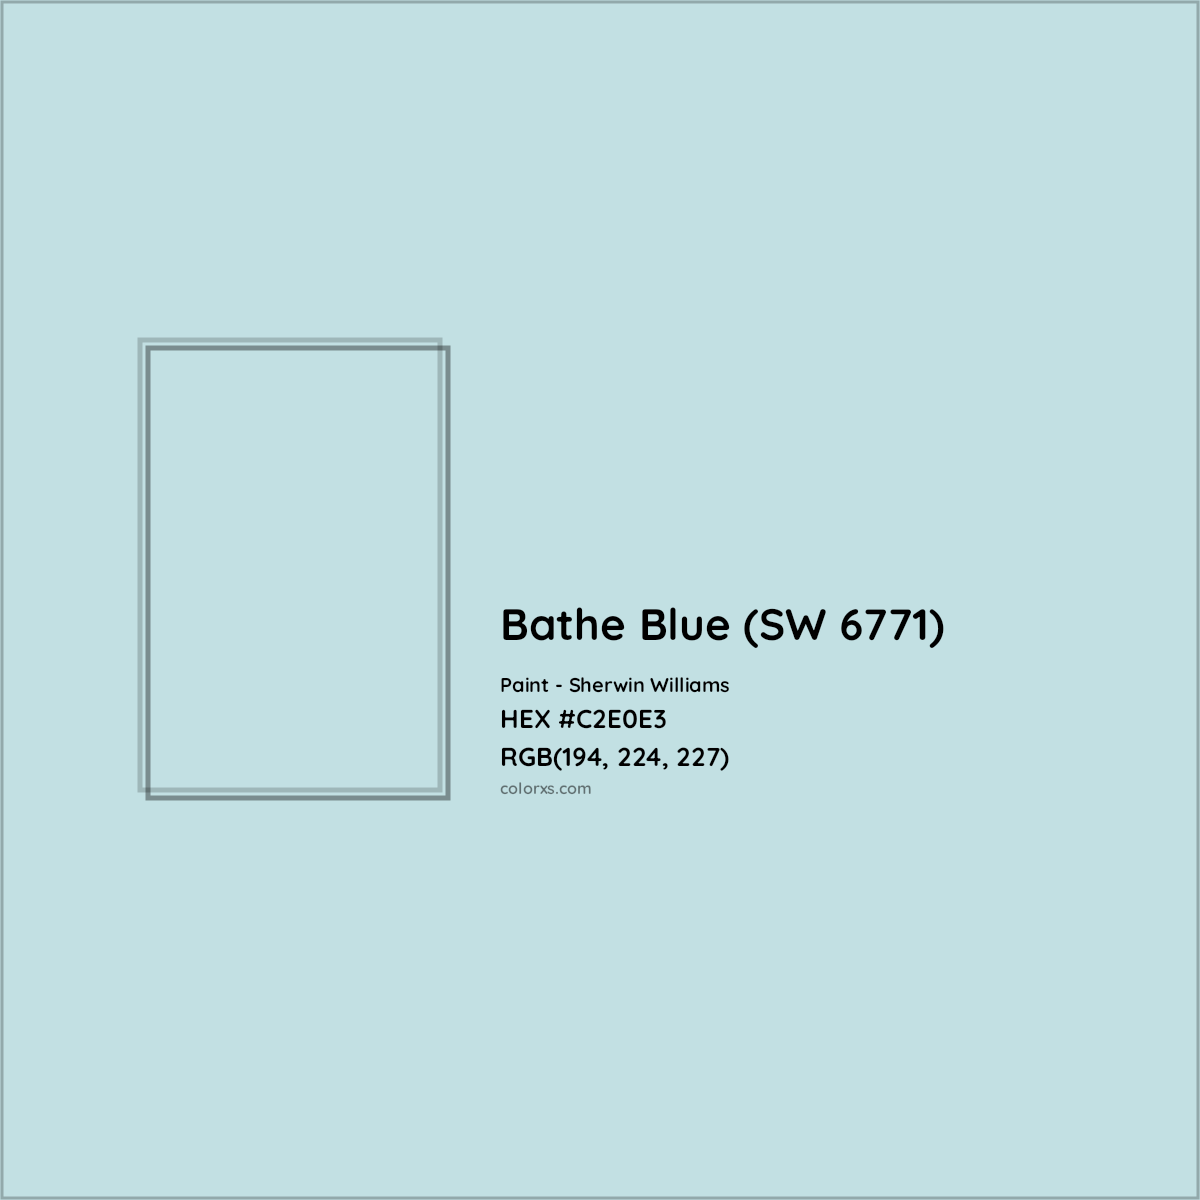 HEX #C2E0E3 Bathe Blue (SW 6771) Paint Sherwin Williams - Color Code